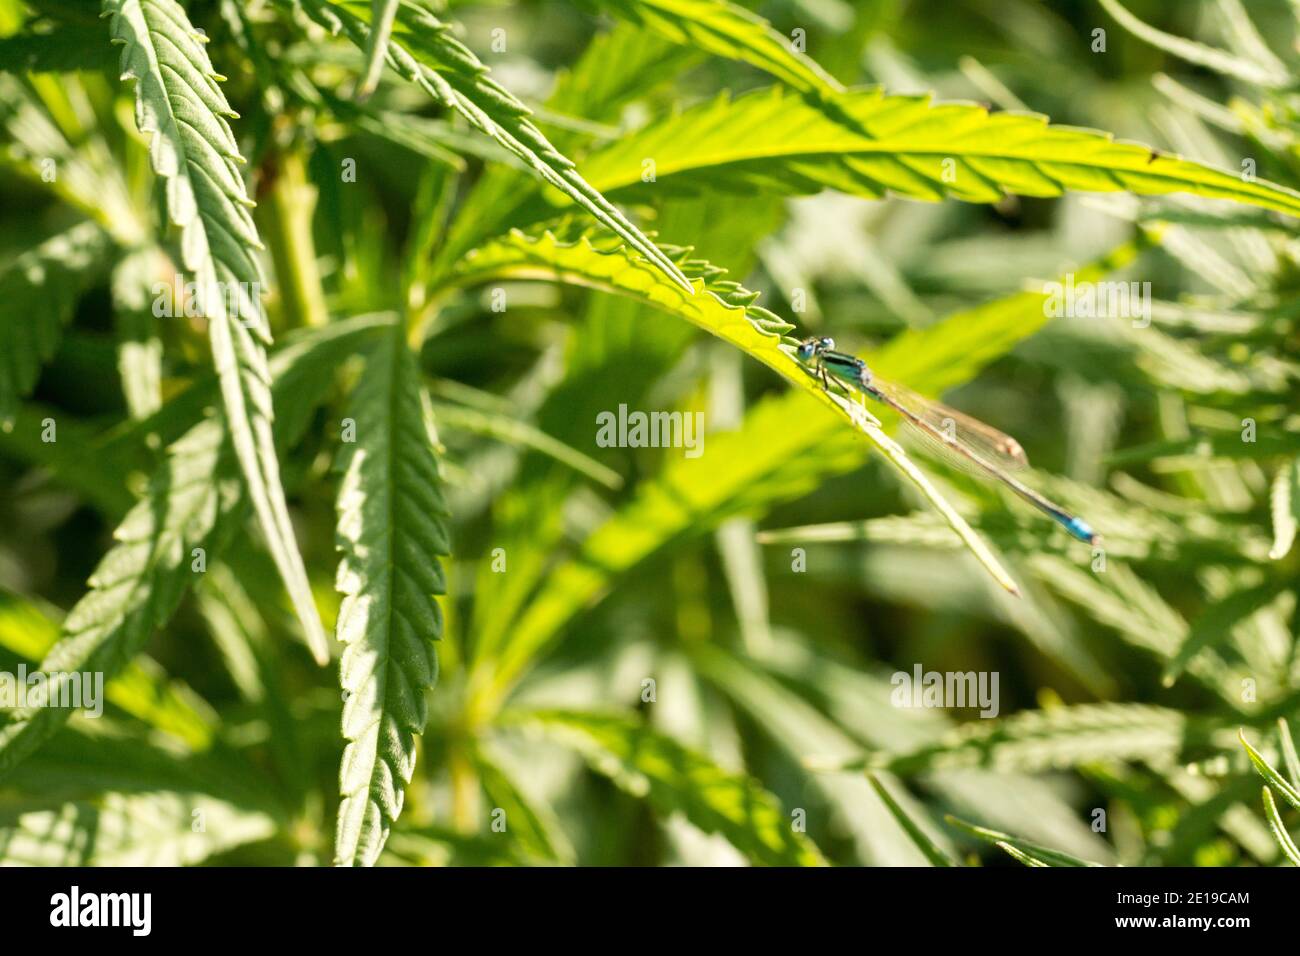 Cannabis Blätter auf Marihuana Feldfarm Sativa Unkraut Hanf Hash Plantage für legale medizinische oder illegale Rauchverbräuche und thc cbd-Anzeige mit Ganja-Blatt Stockfoto